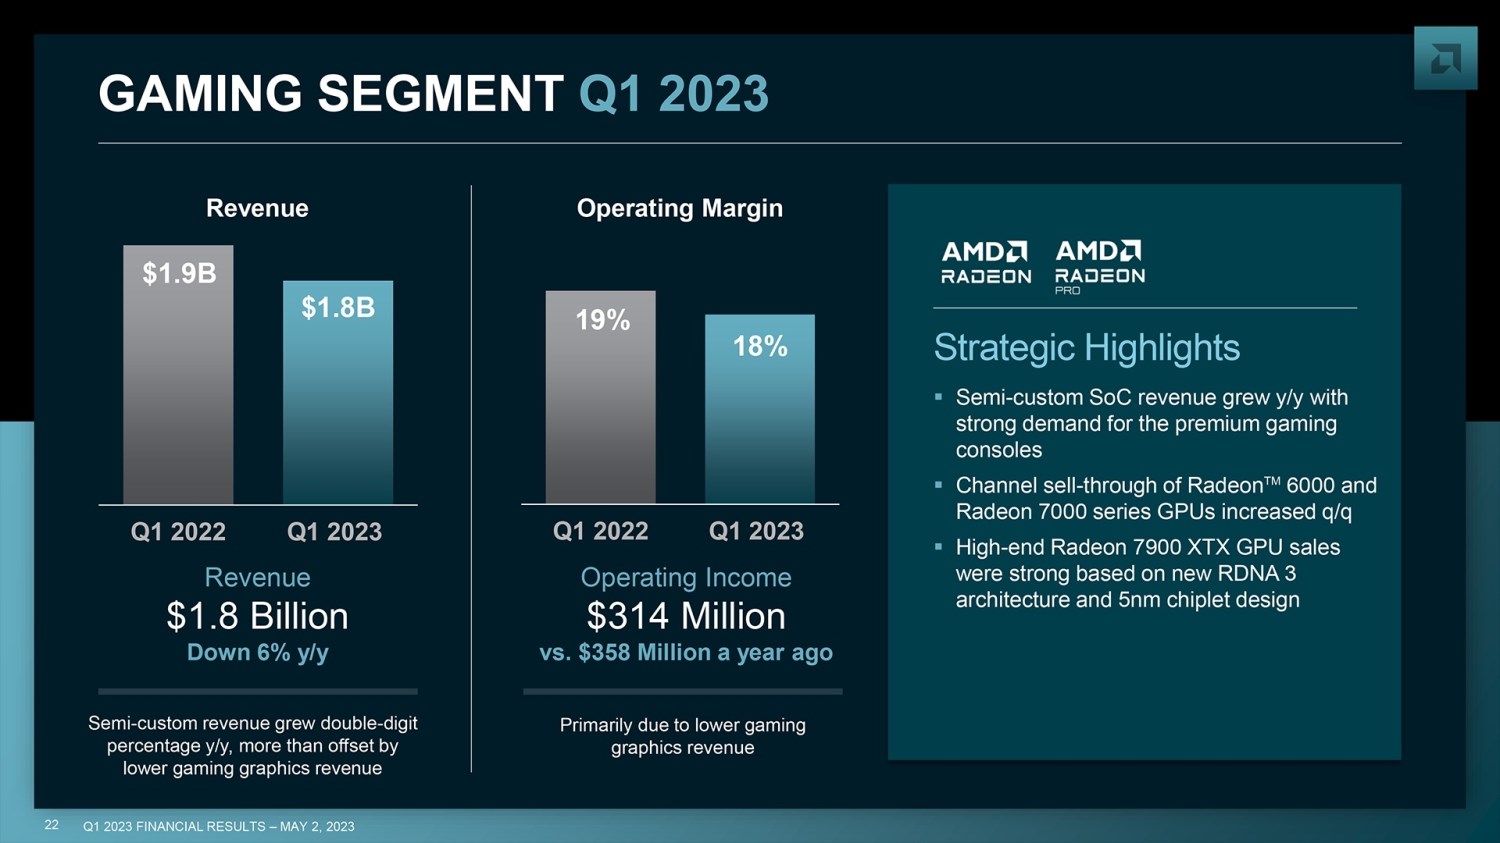 AMD patronu mutlu ama net gelir kaybı yüzde 100’den fazla!